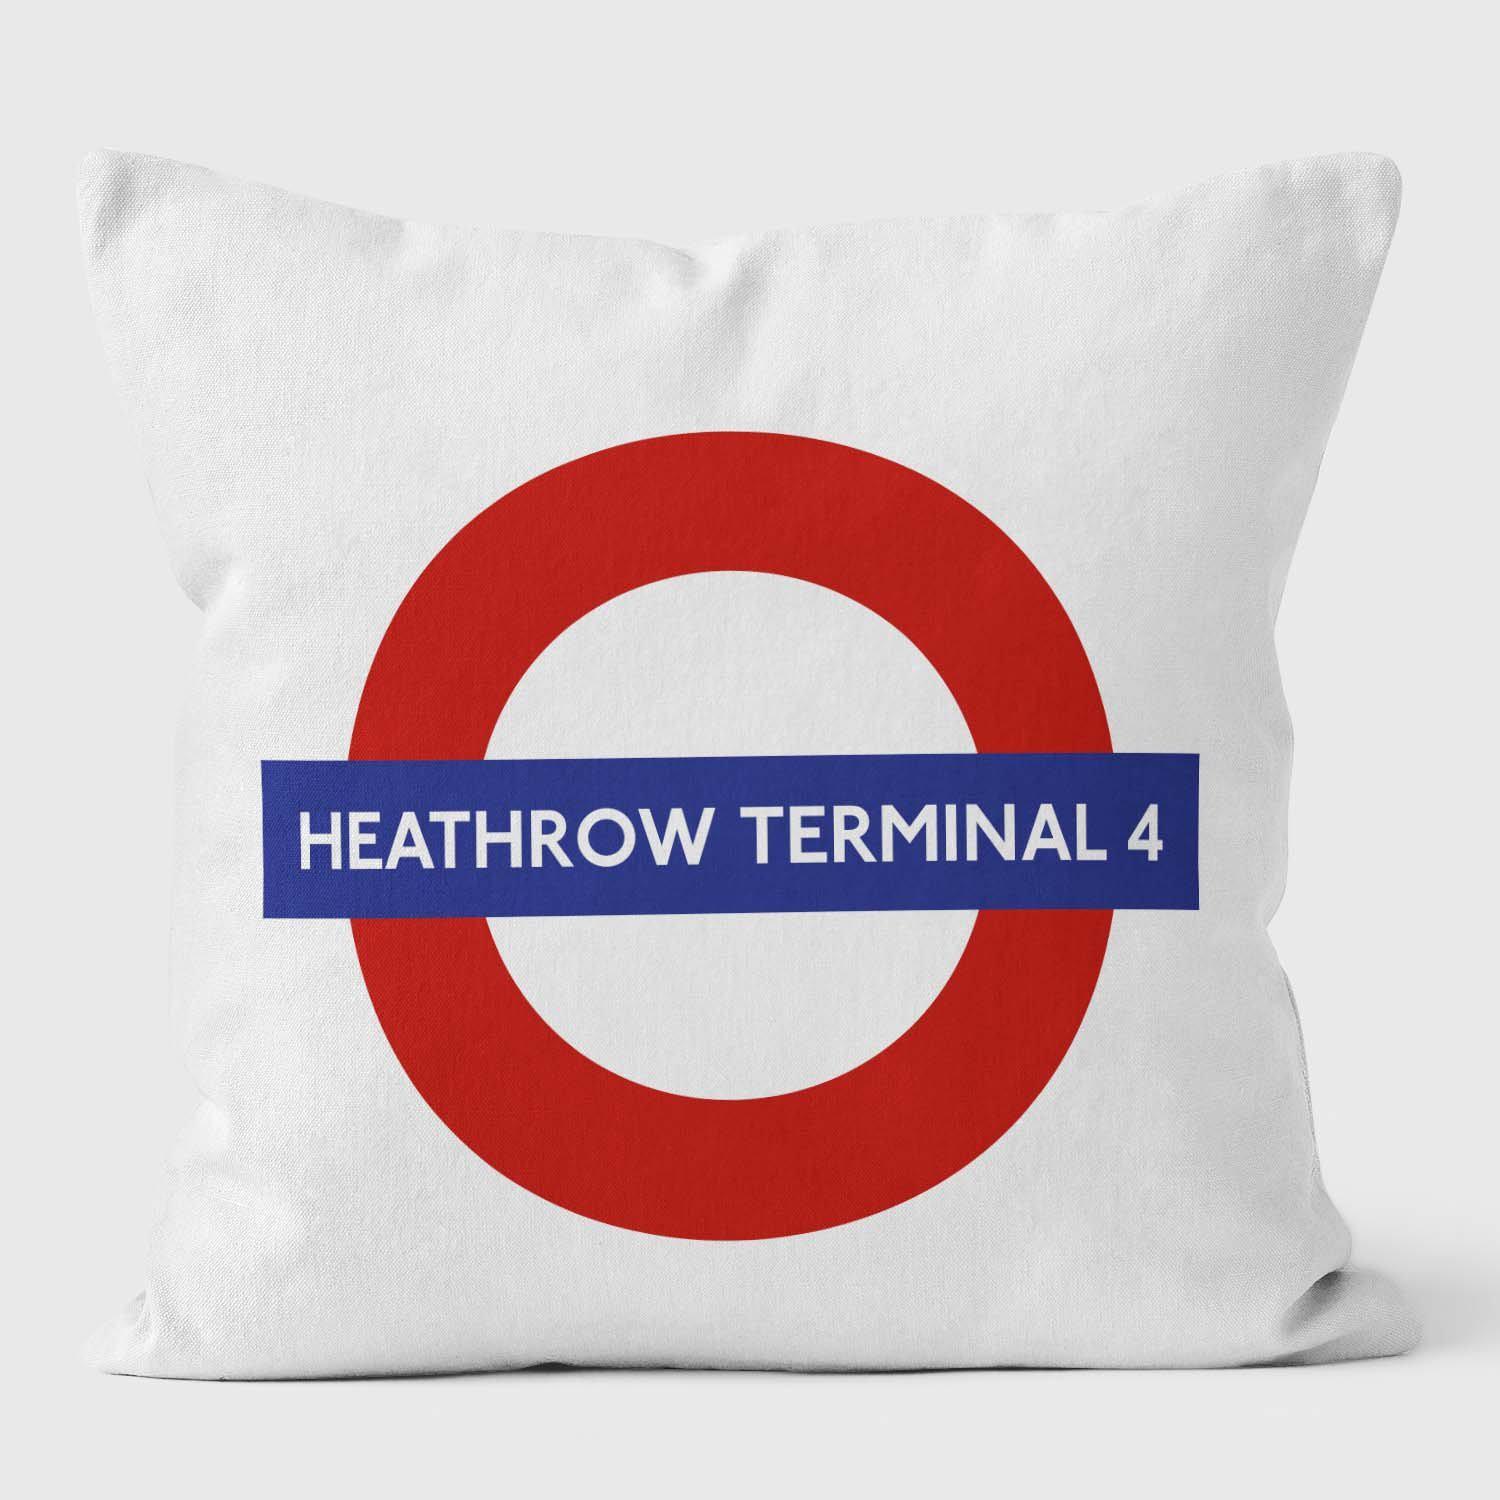 Heathrow Terminal 4 London Underground Tube Station Roundel Cushion - Handmade Cushions UK - WeLoveCushions